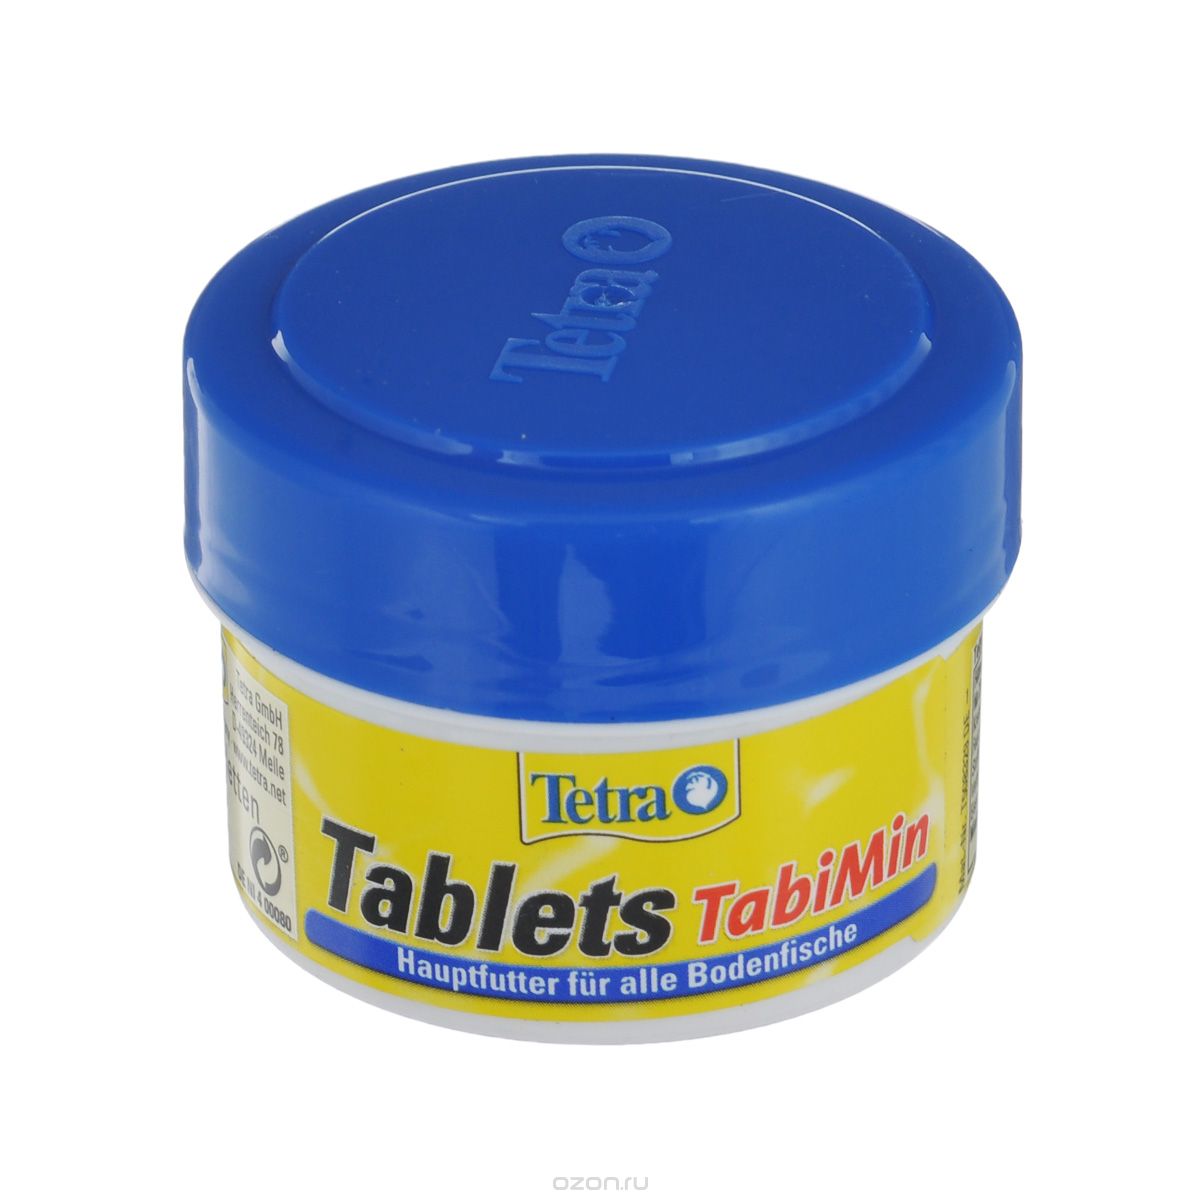   Tetra Tablets 